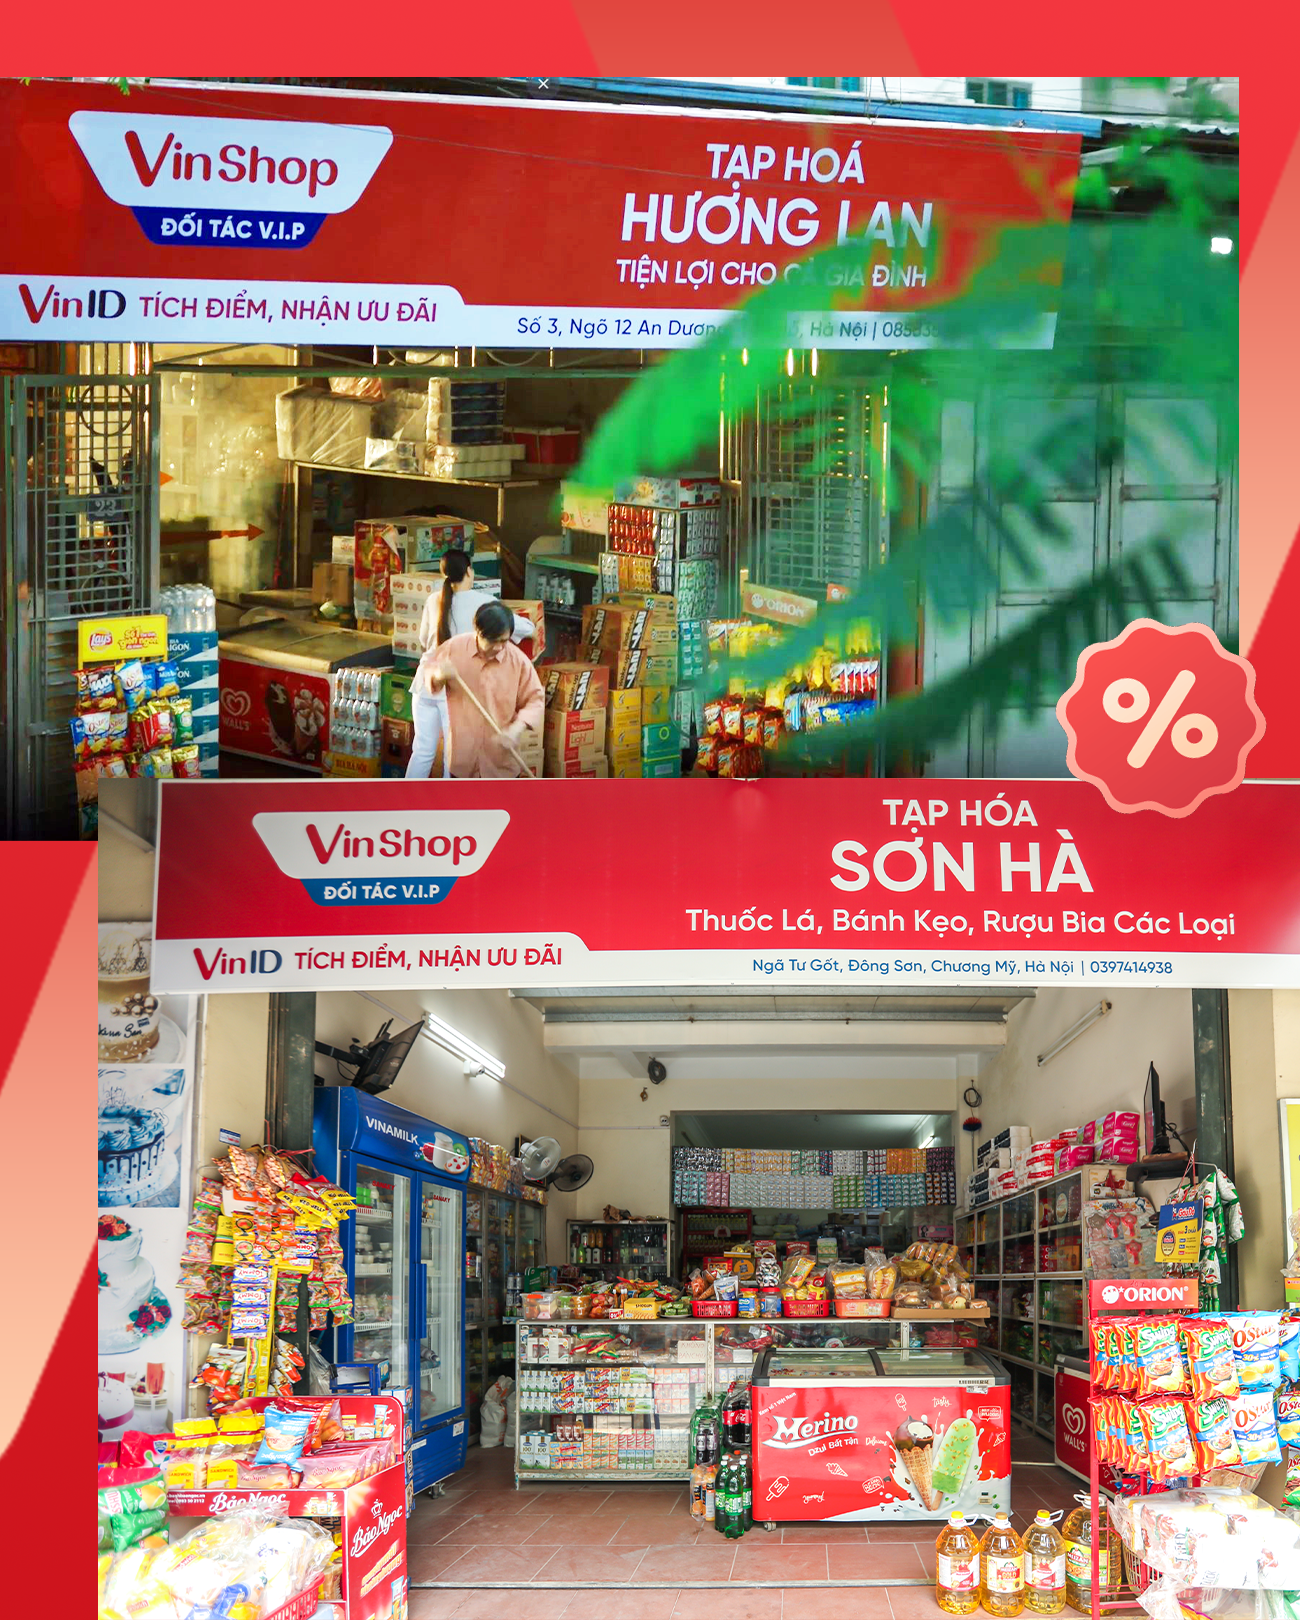 VinShop  Mô hình nền tảng số hóa hàng đầu cho ngành bán lẻ truyền thống  Việt